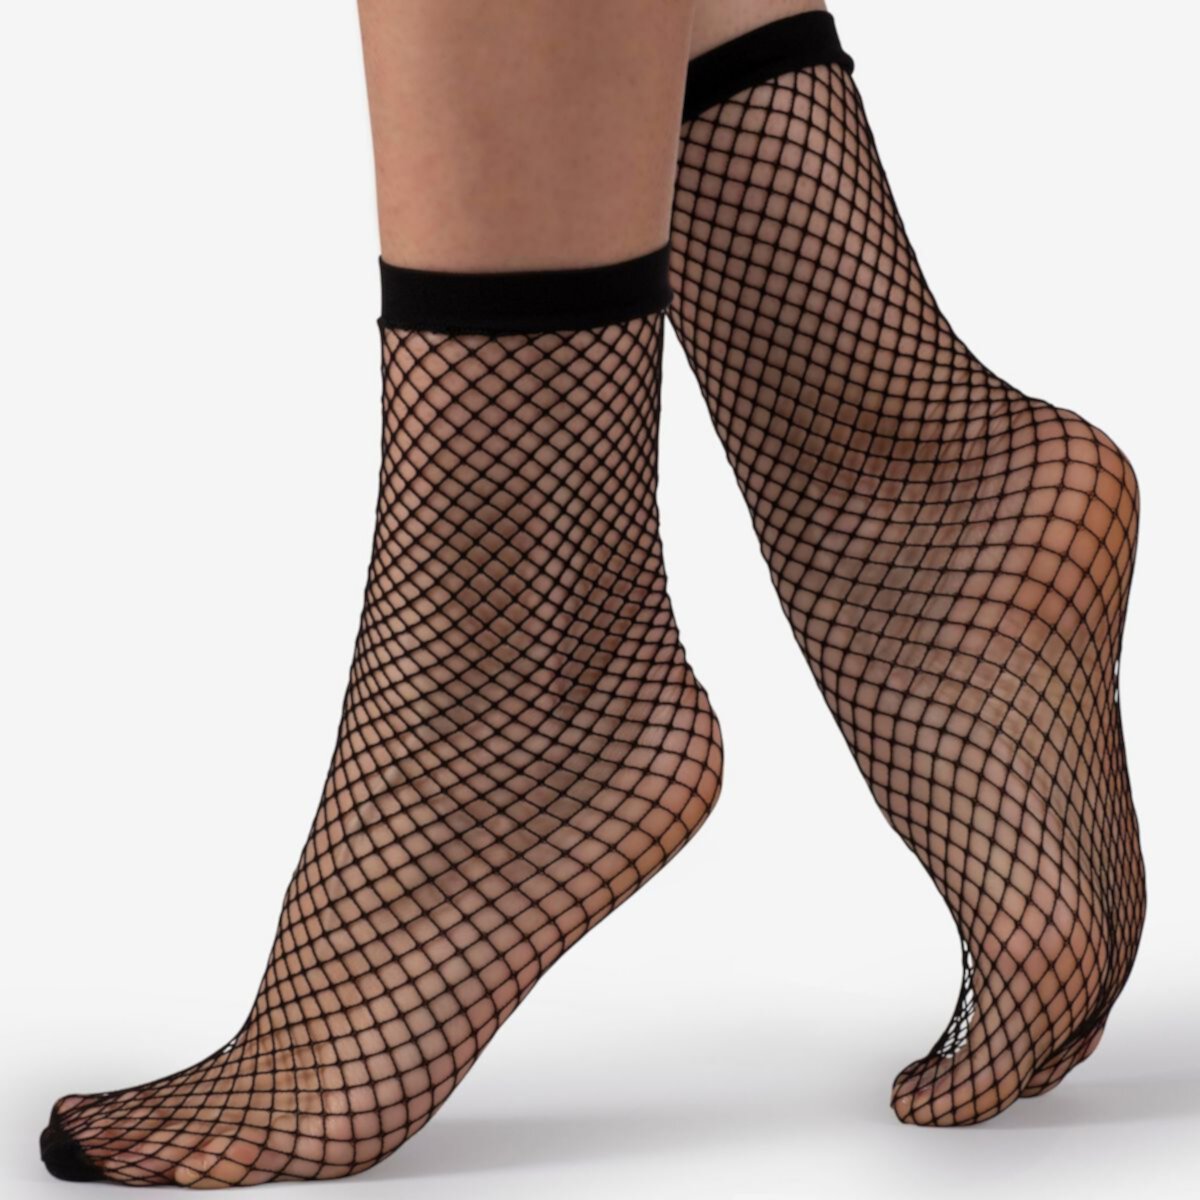 LECHERY® Fishnet 1 Pair of Ankle Socks Lechery